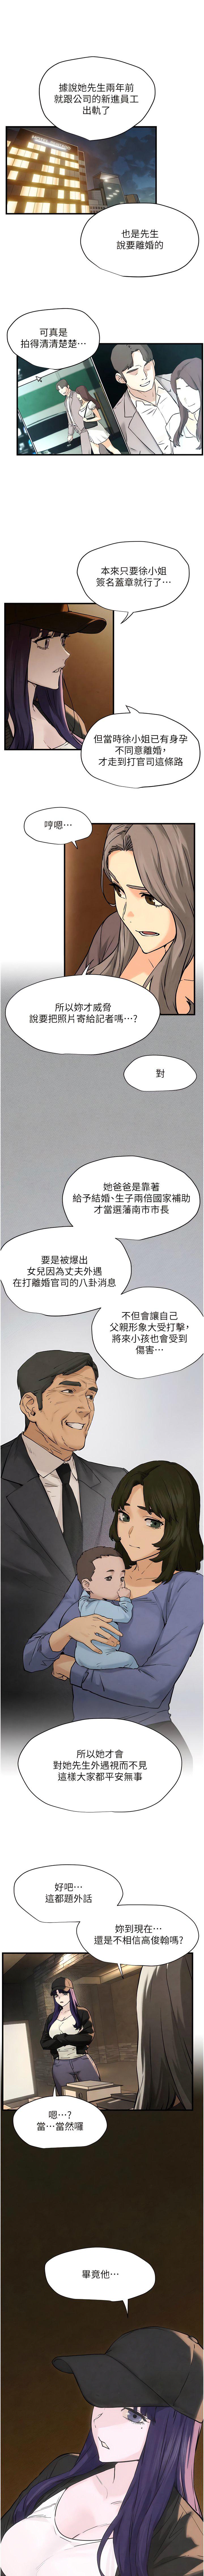 韩国污漫画 欲海交鋒 第6话 寻找性奴的危险顾客 18